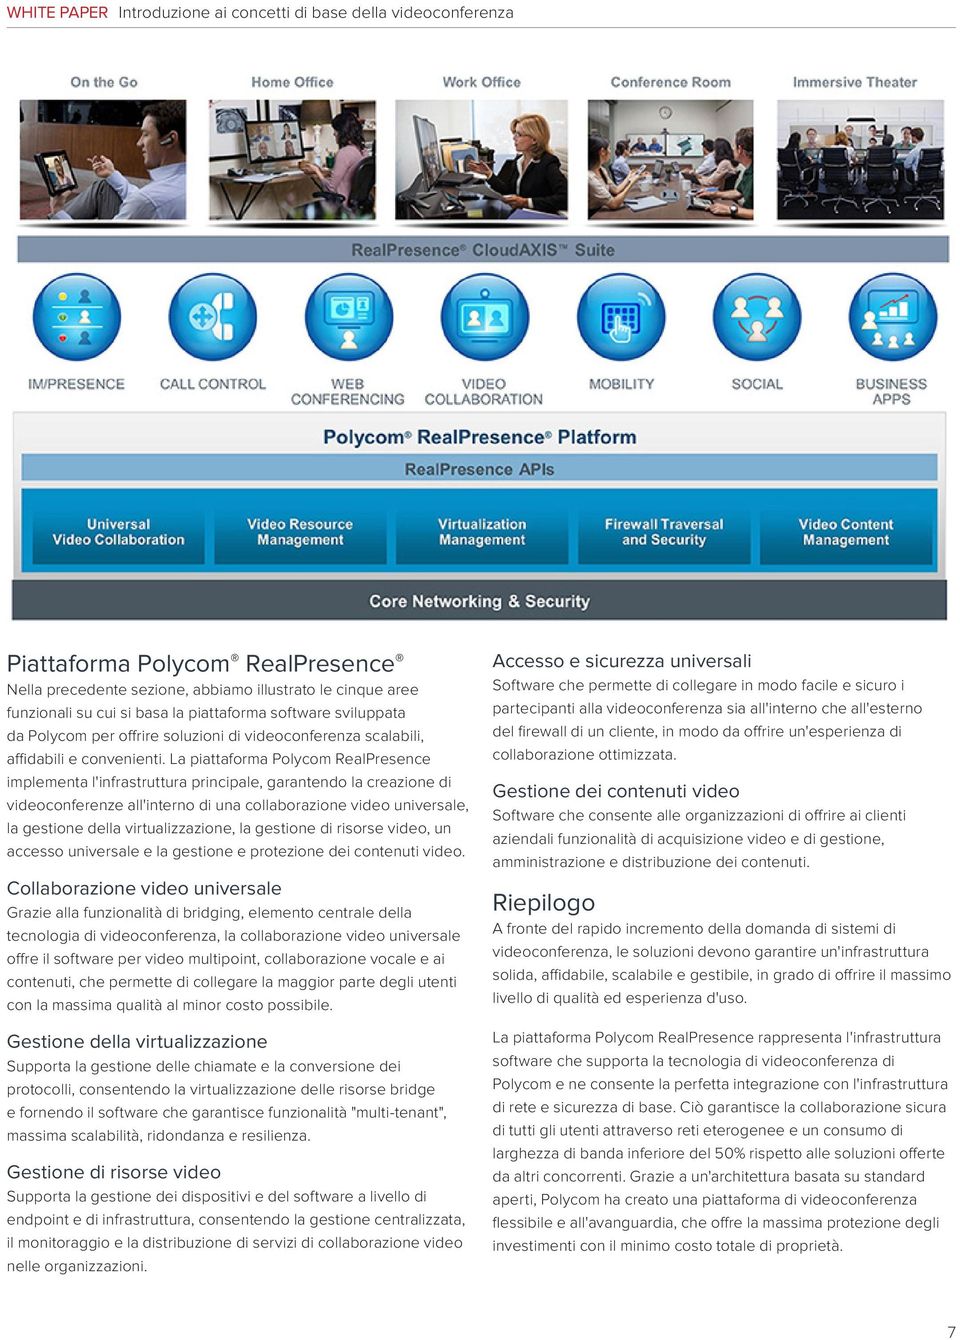 La piattaforma Polycom RealPresence implementa l'infrastruttura principale, garantendo la creazione di videoconferenze all'interno di una collaborazione video universale, la gestione della